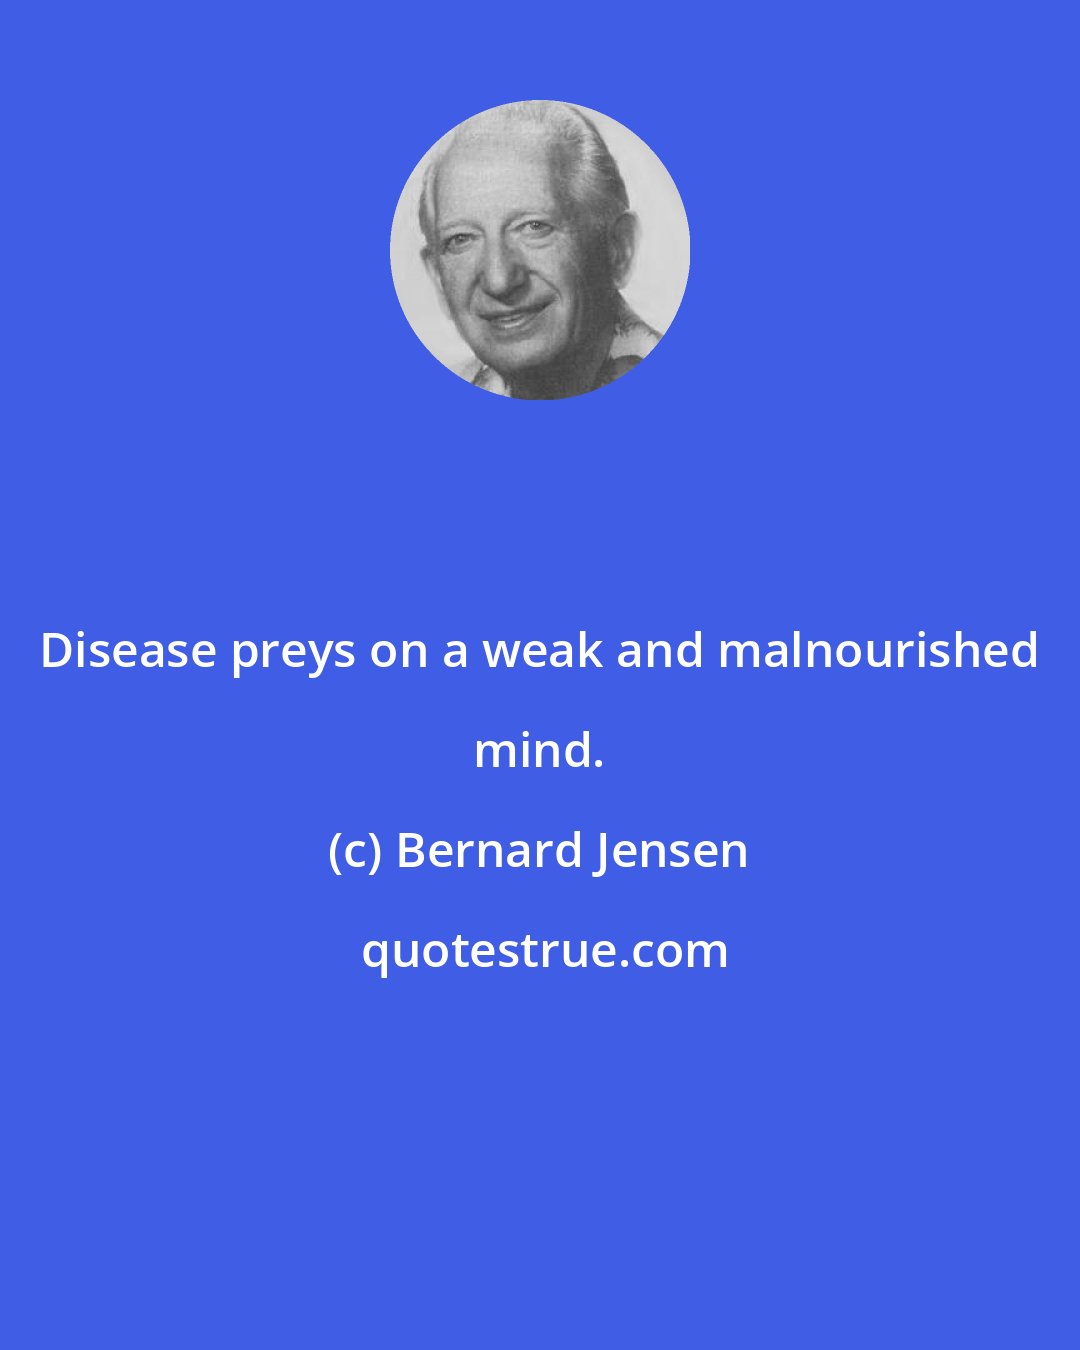 Bernard Jensen: Disease preys on a weak and malnourished mind.